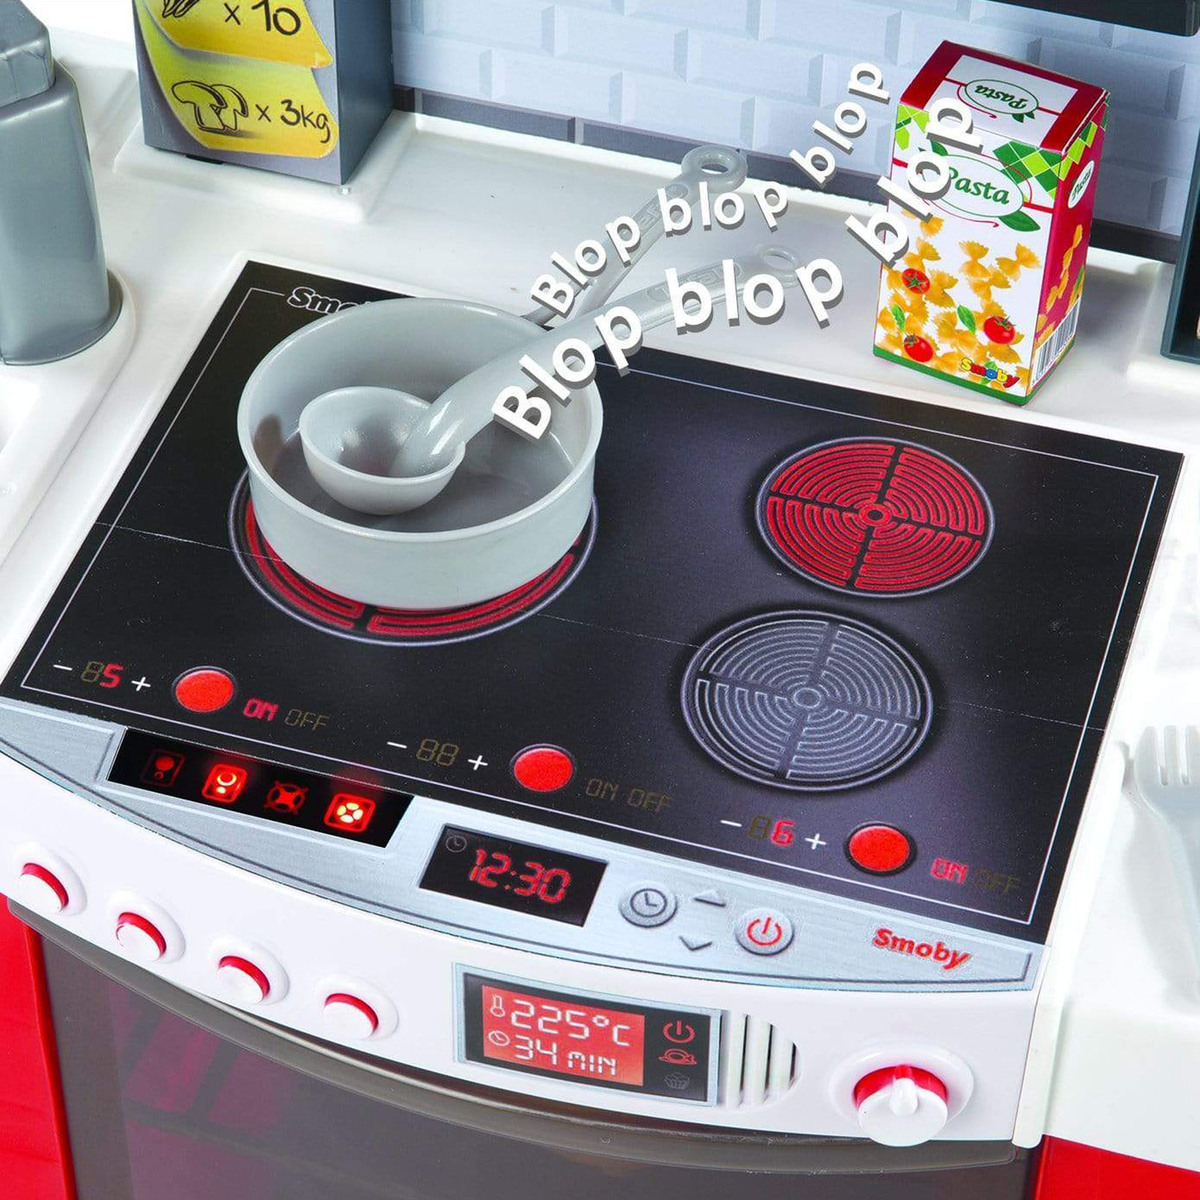 سموبي تيفال مجموعة ألعاب المطبخ كوكترونيك